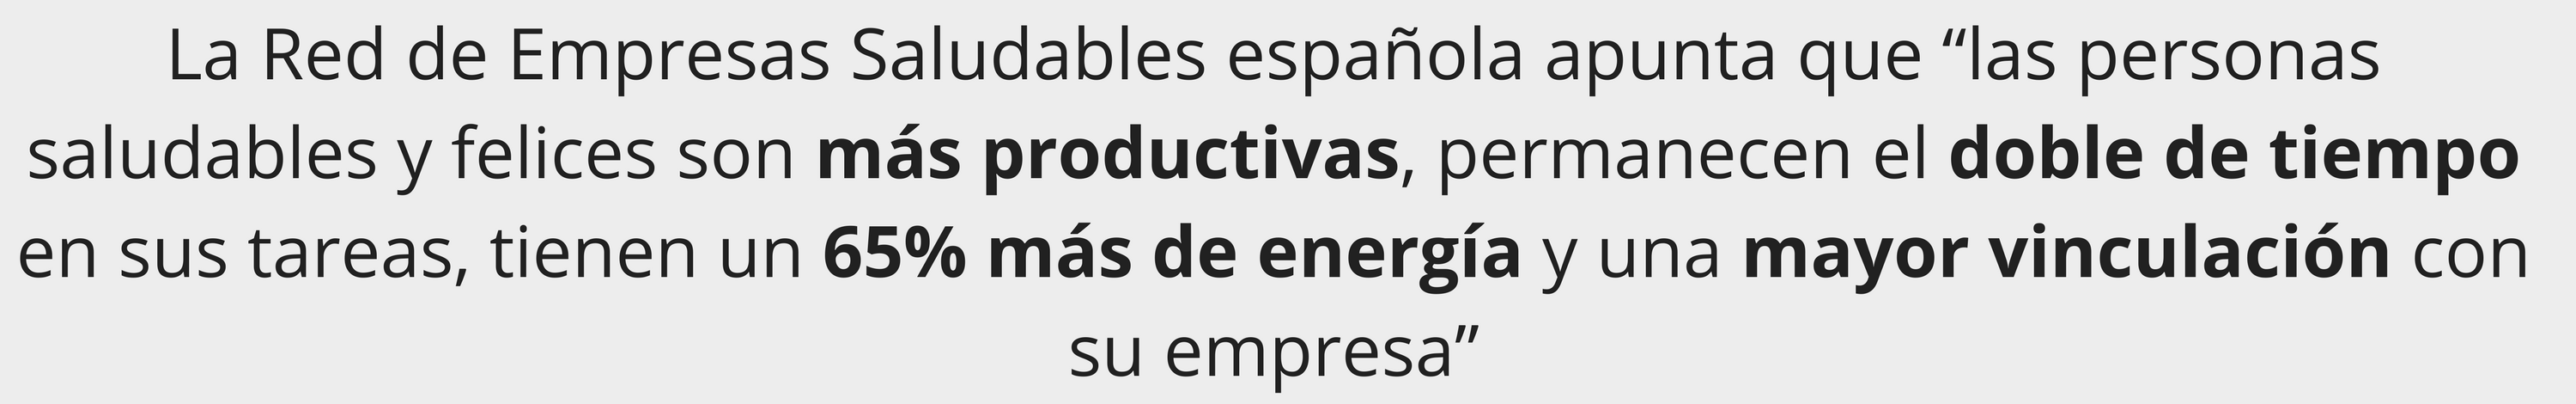 La Red de Empresas Saludables española apunta que “las personas saludables y felices son más productivas, permanecen el doble de tiempo en sus tareas, tienen un 65% más de energía y una mayor vinculación con su empresa”